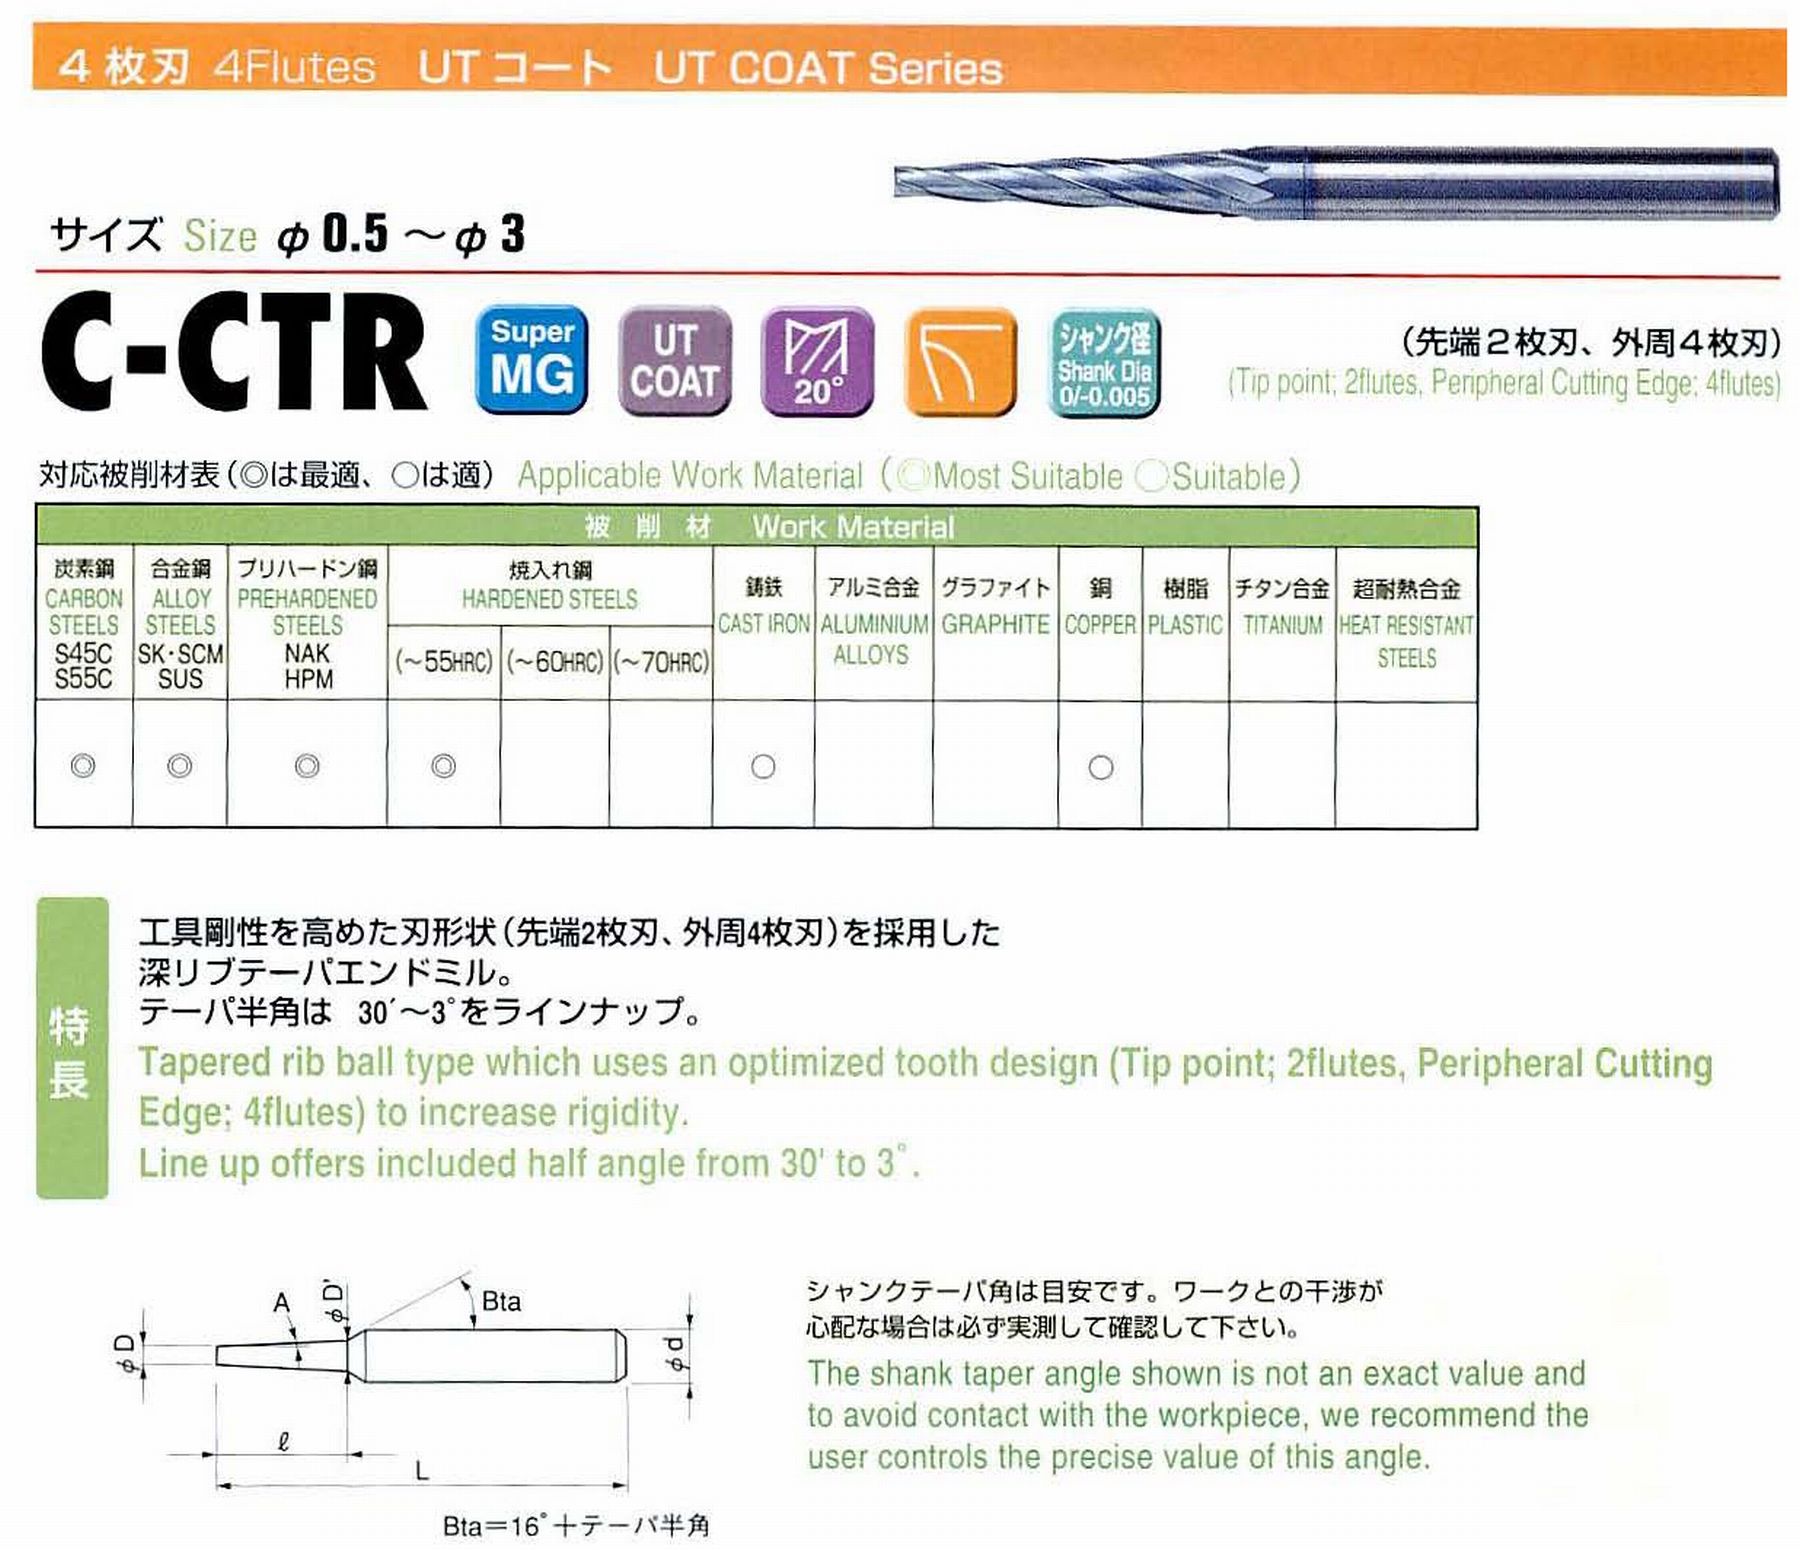 ユニオンツール 4枚刃 C-CTR4016-10-2 先端径1.6 テーパ半角1° 刃長10 大端径1.95 全長45 シャンク径4